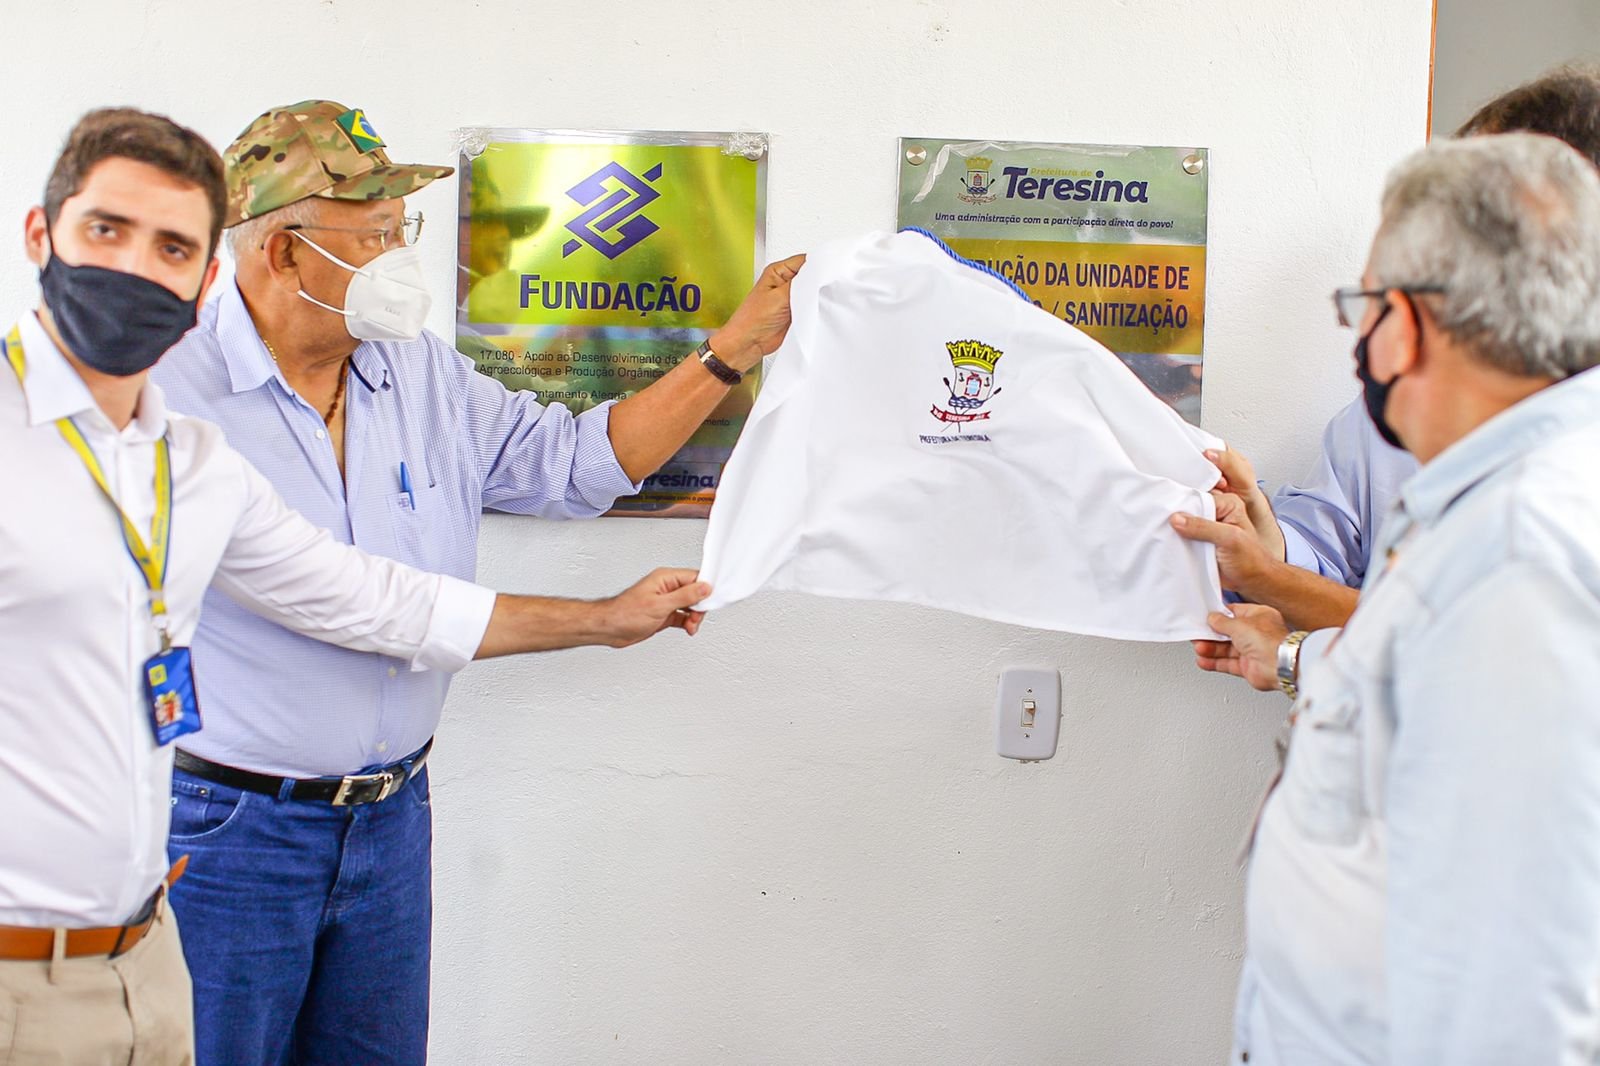 Dr. Pessoa inaugura a primeira Unidade de Higienização/Sanitização